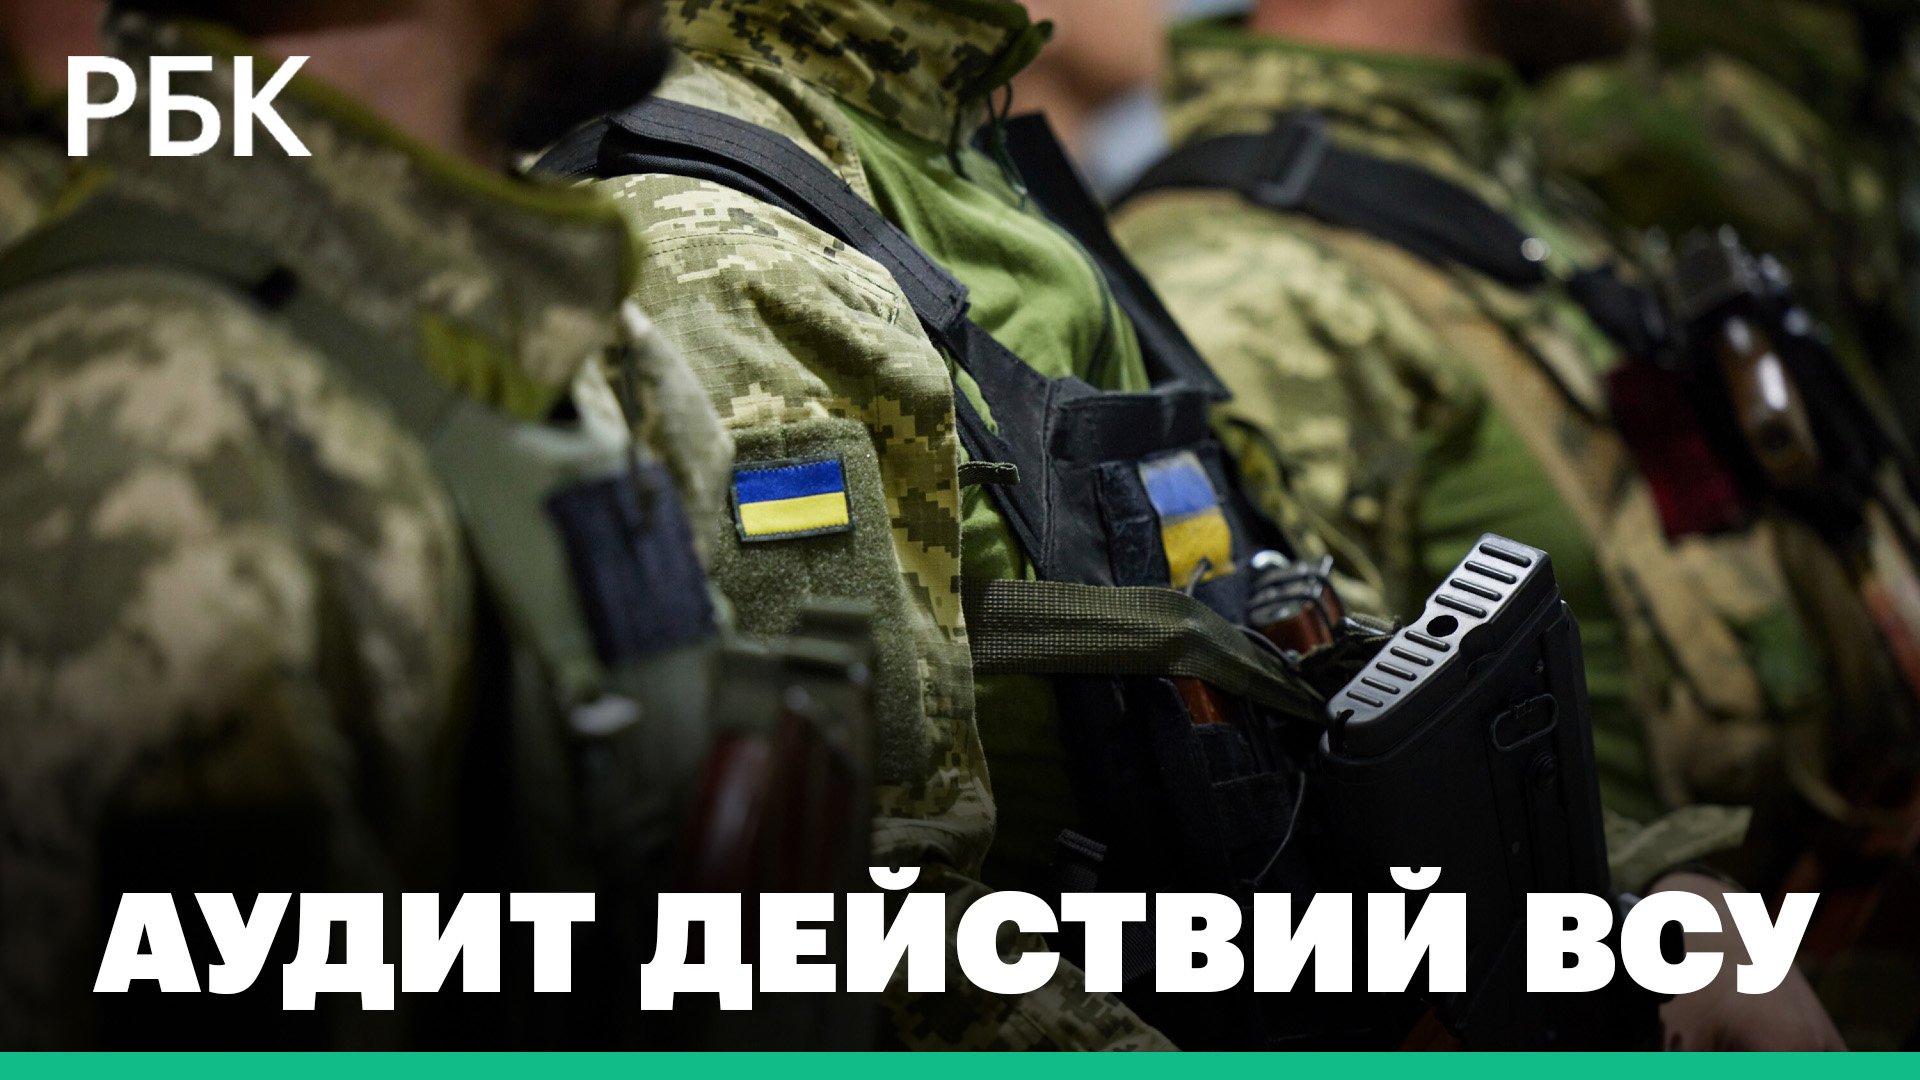 На Украине приступили к аудиту действий ВСУ